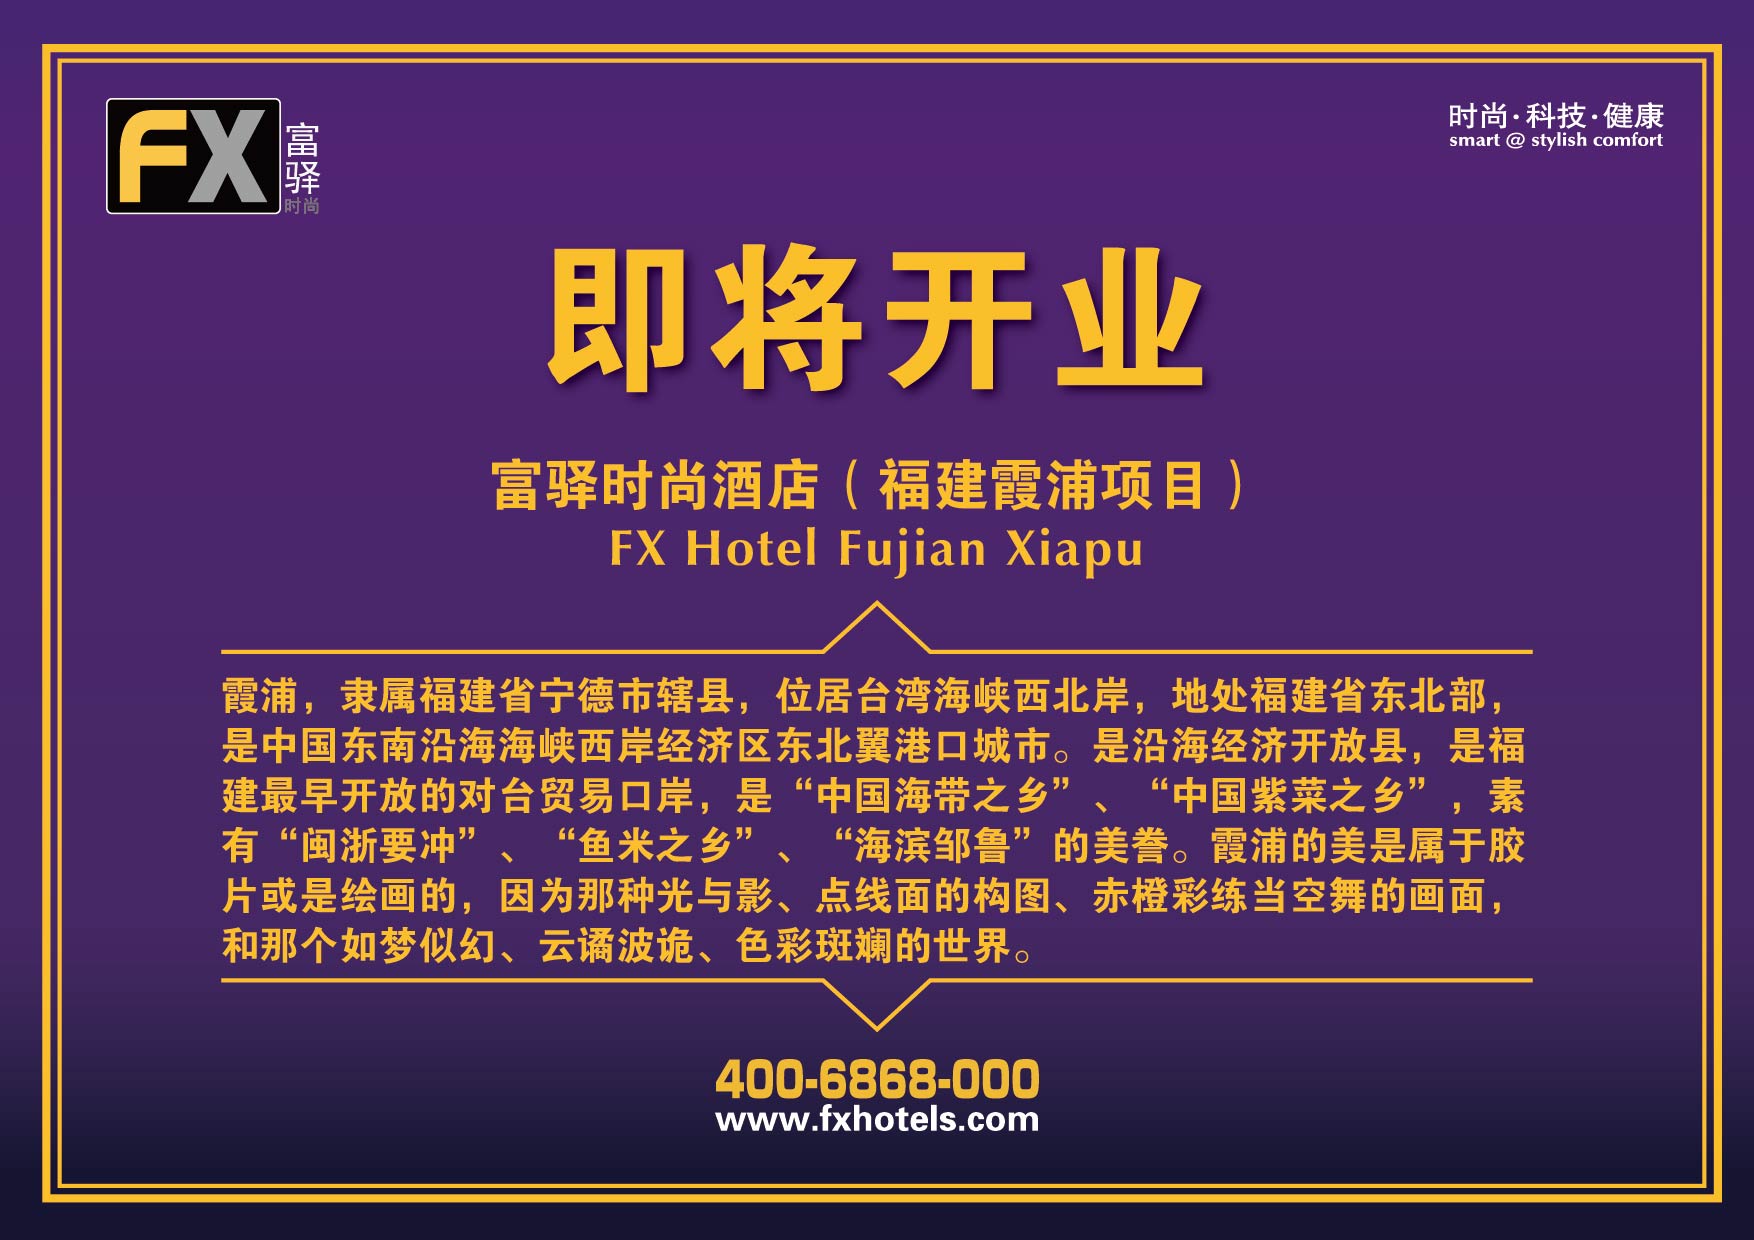 FX Hotel Fujian Xiapu